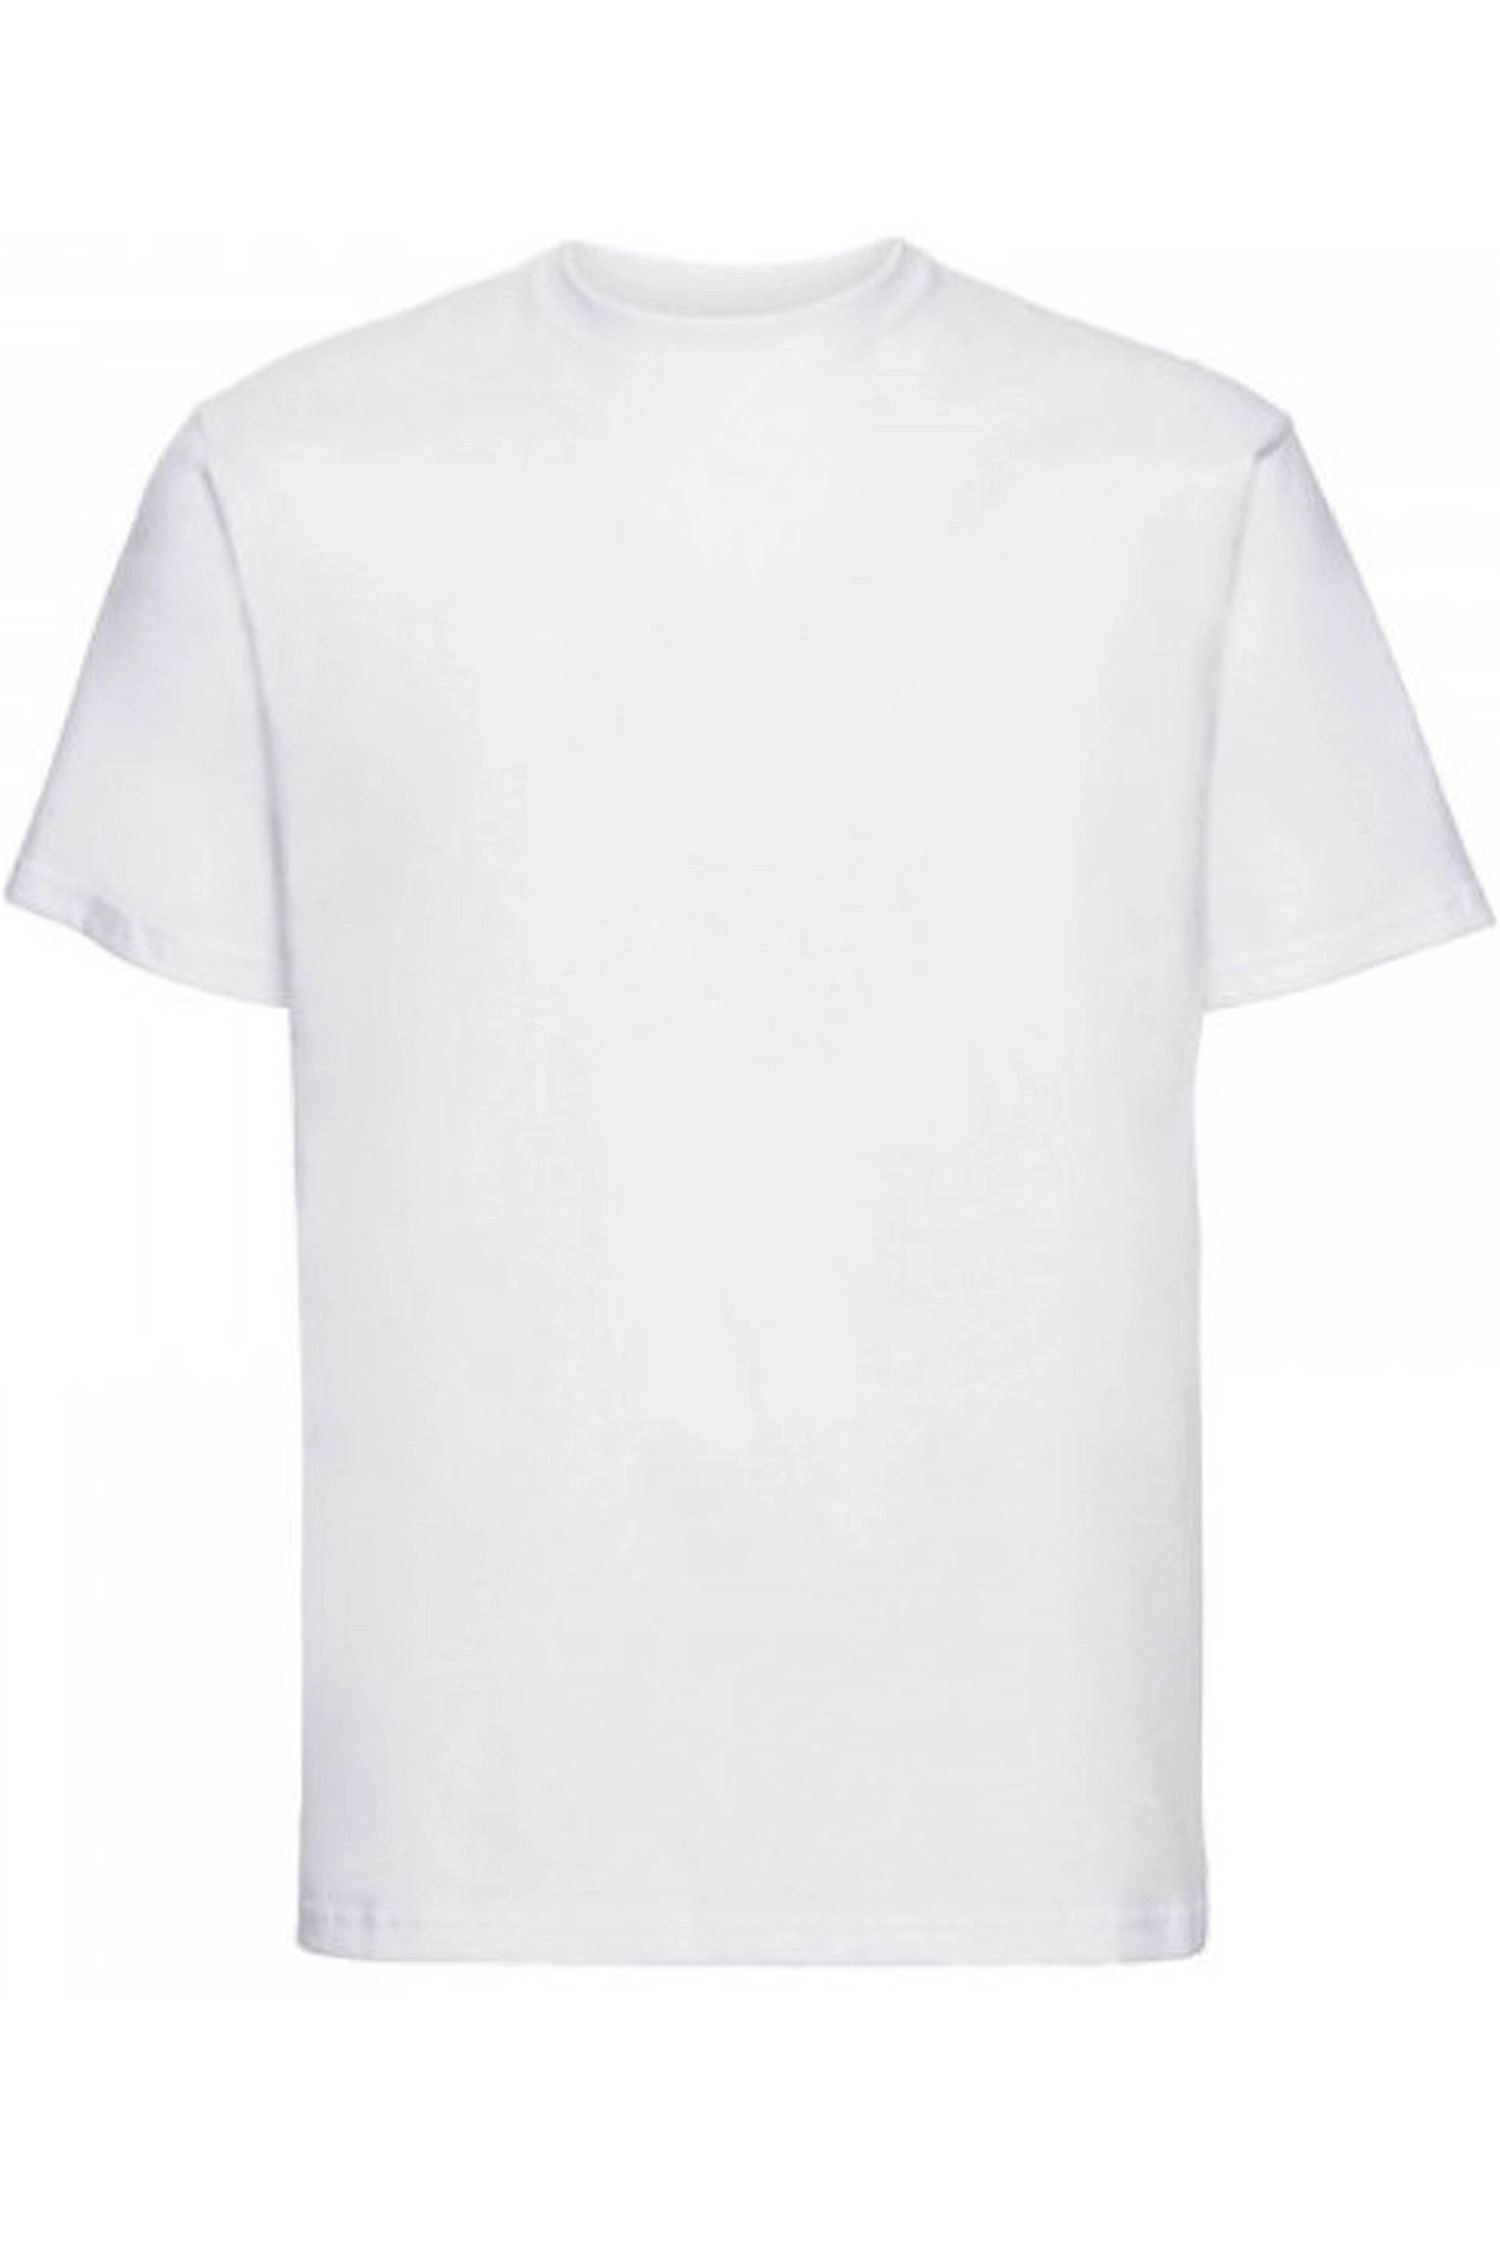 E-shop Pánske tričko 002 white